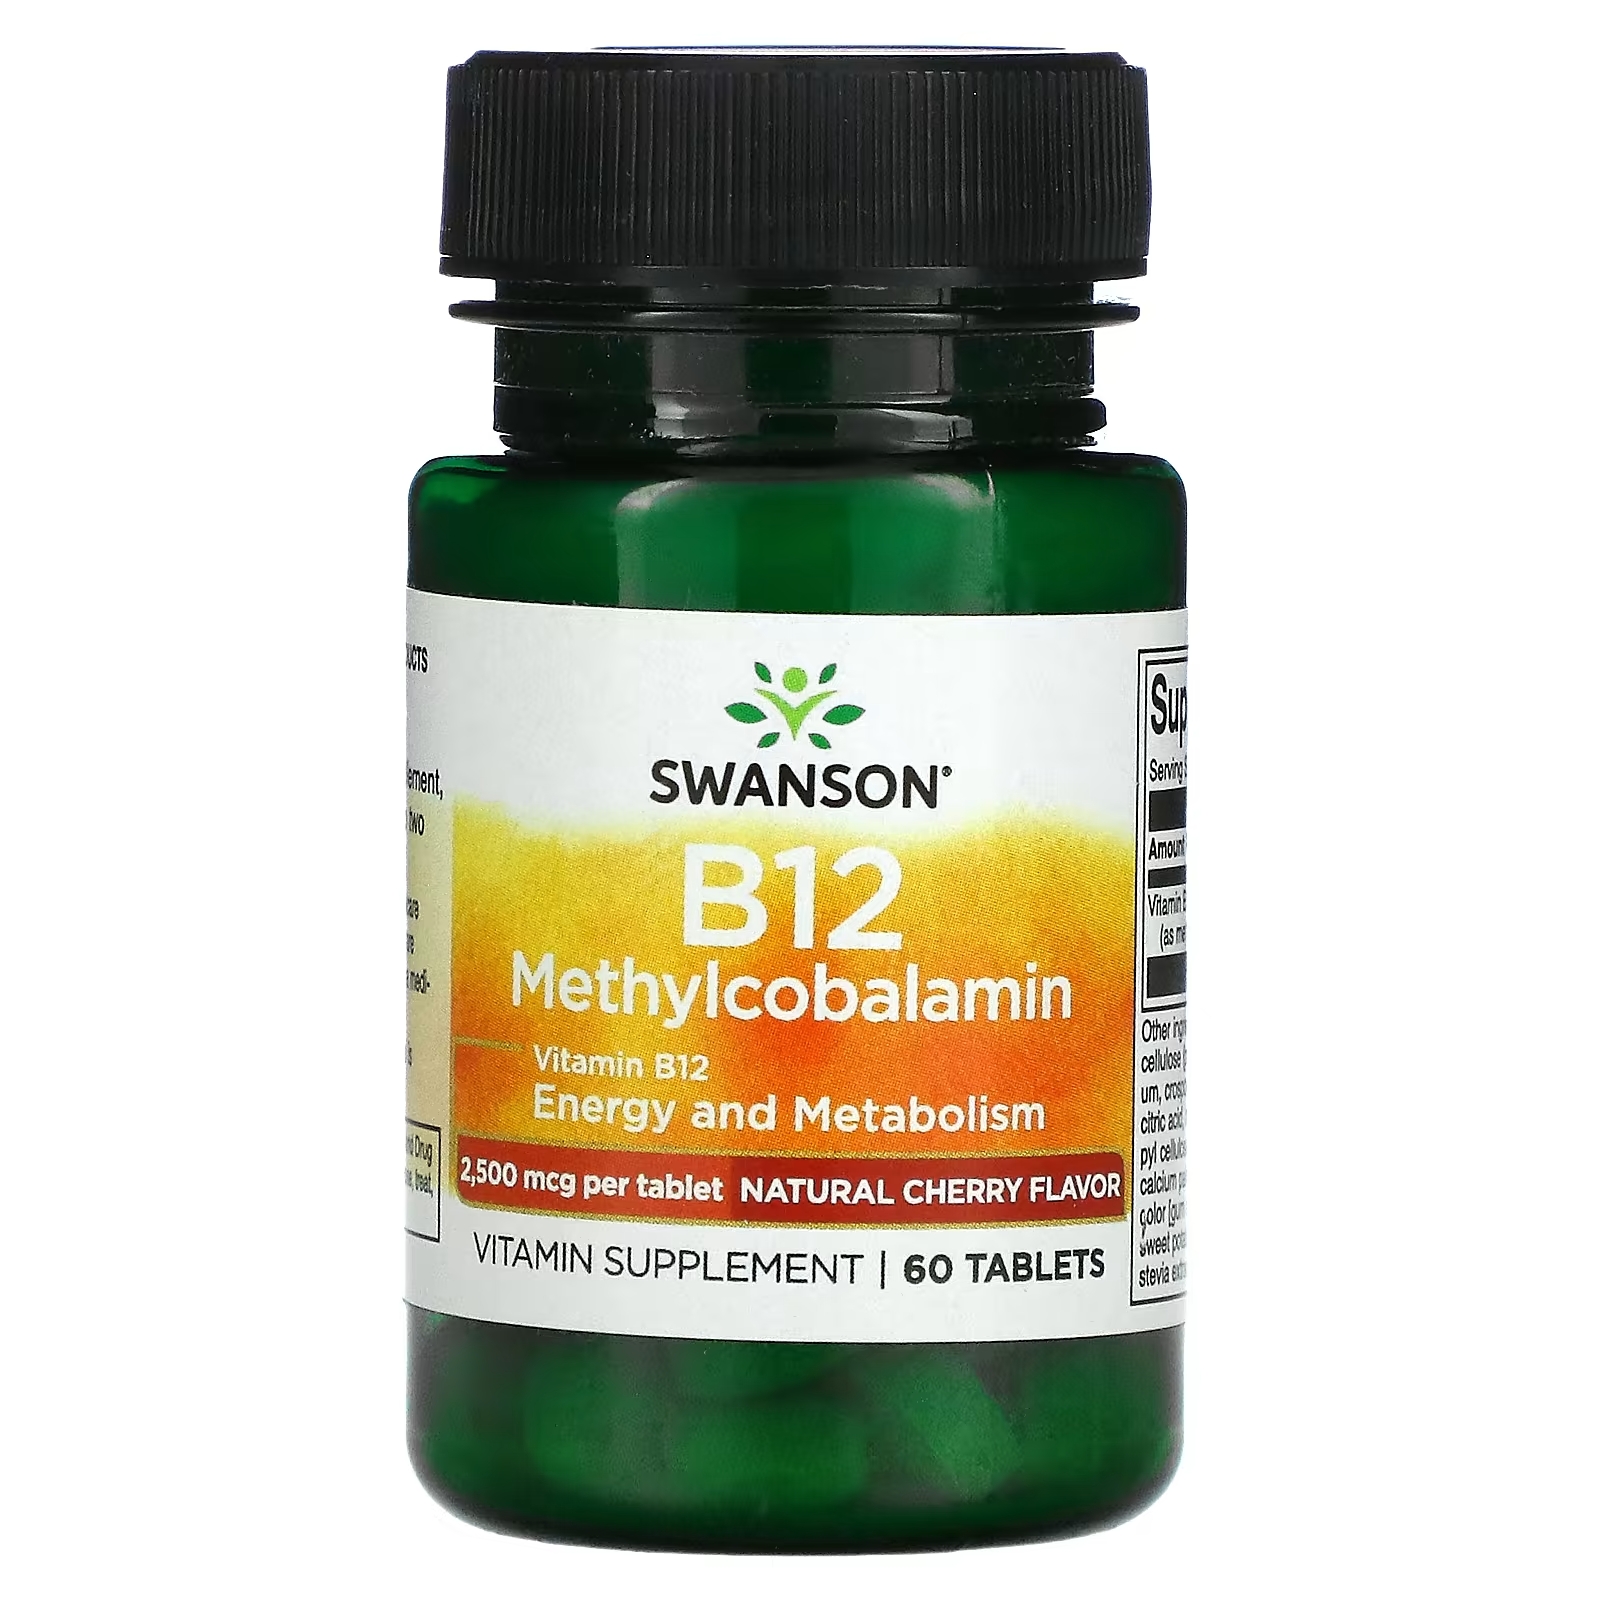 Swanson B12 метилкобаламин вишня, 60 таблеток витамин b12 swanson вишня 60 таблеток